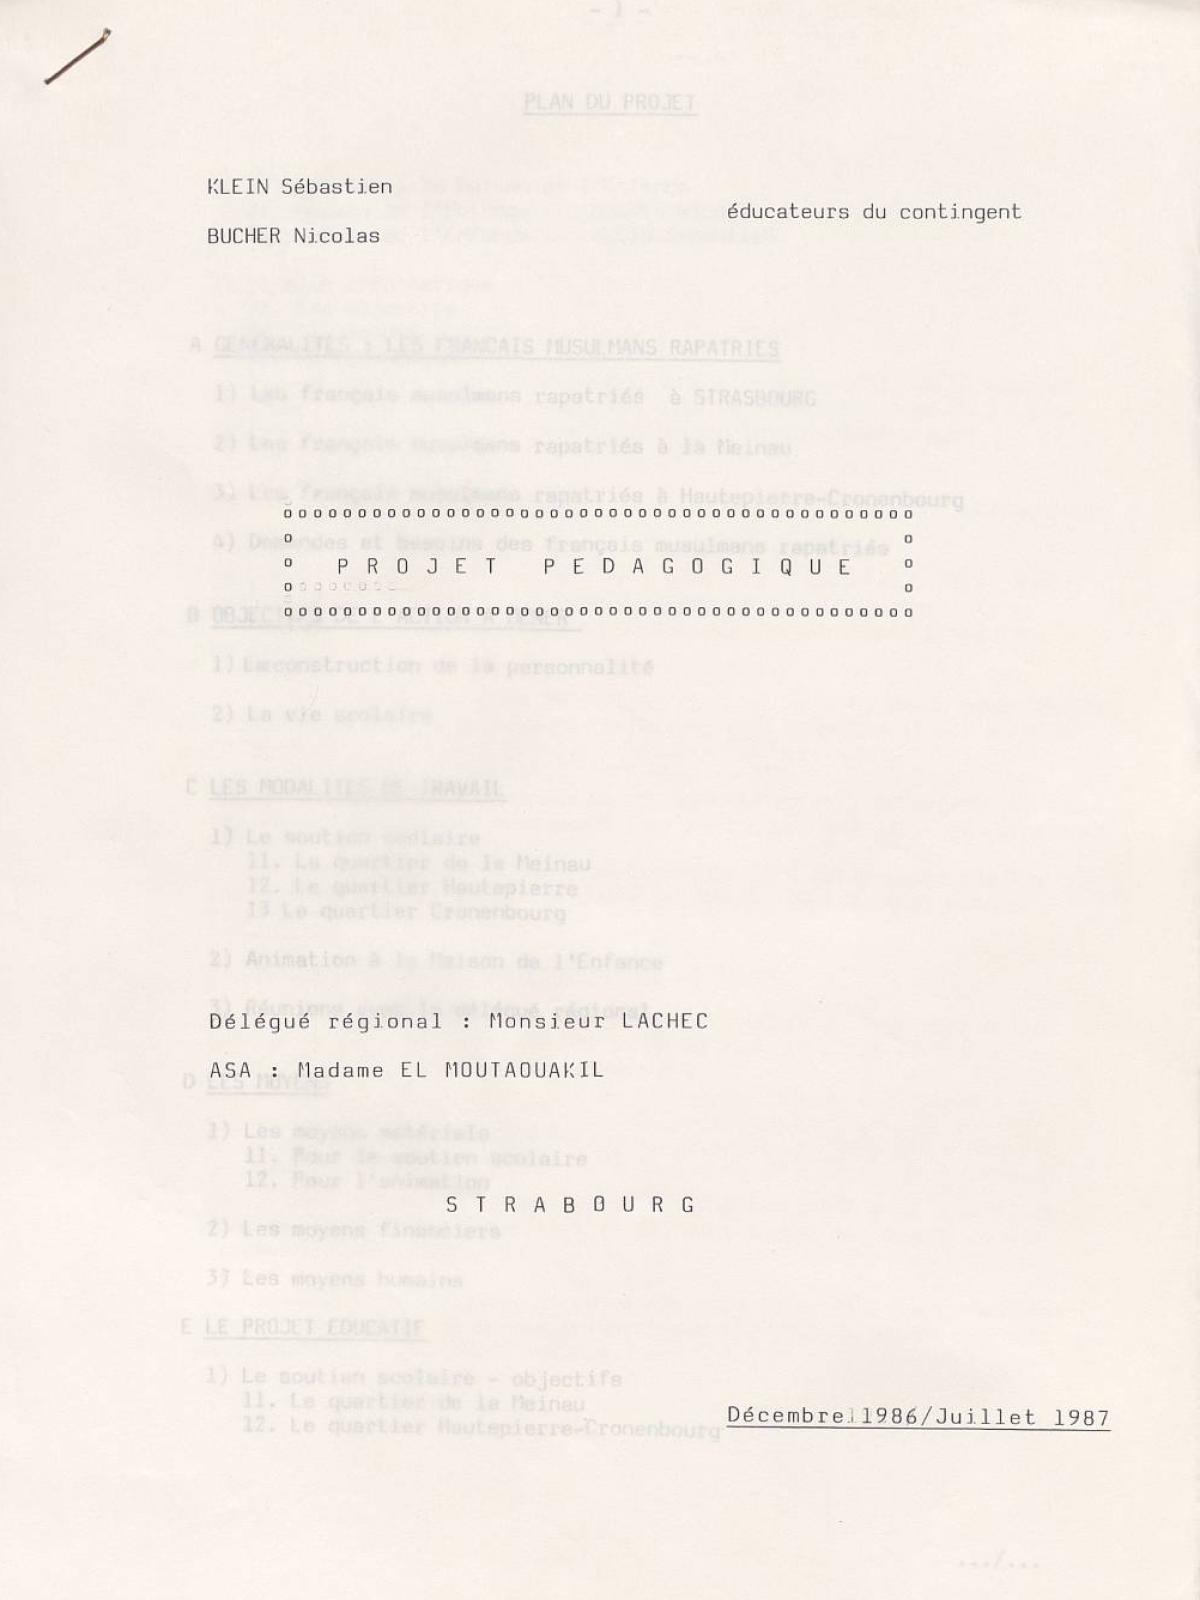 Illustration 6 : Klein Sébastien et Buchet Nicolas, projet pédagogique, décembre 1986 - juillet 1987 (Archives nationales, 19870444/8)